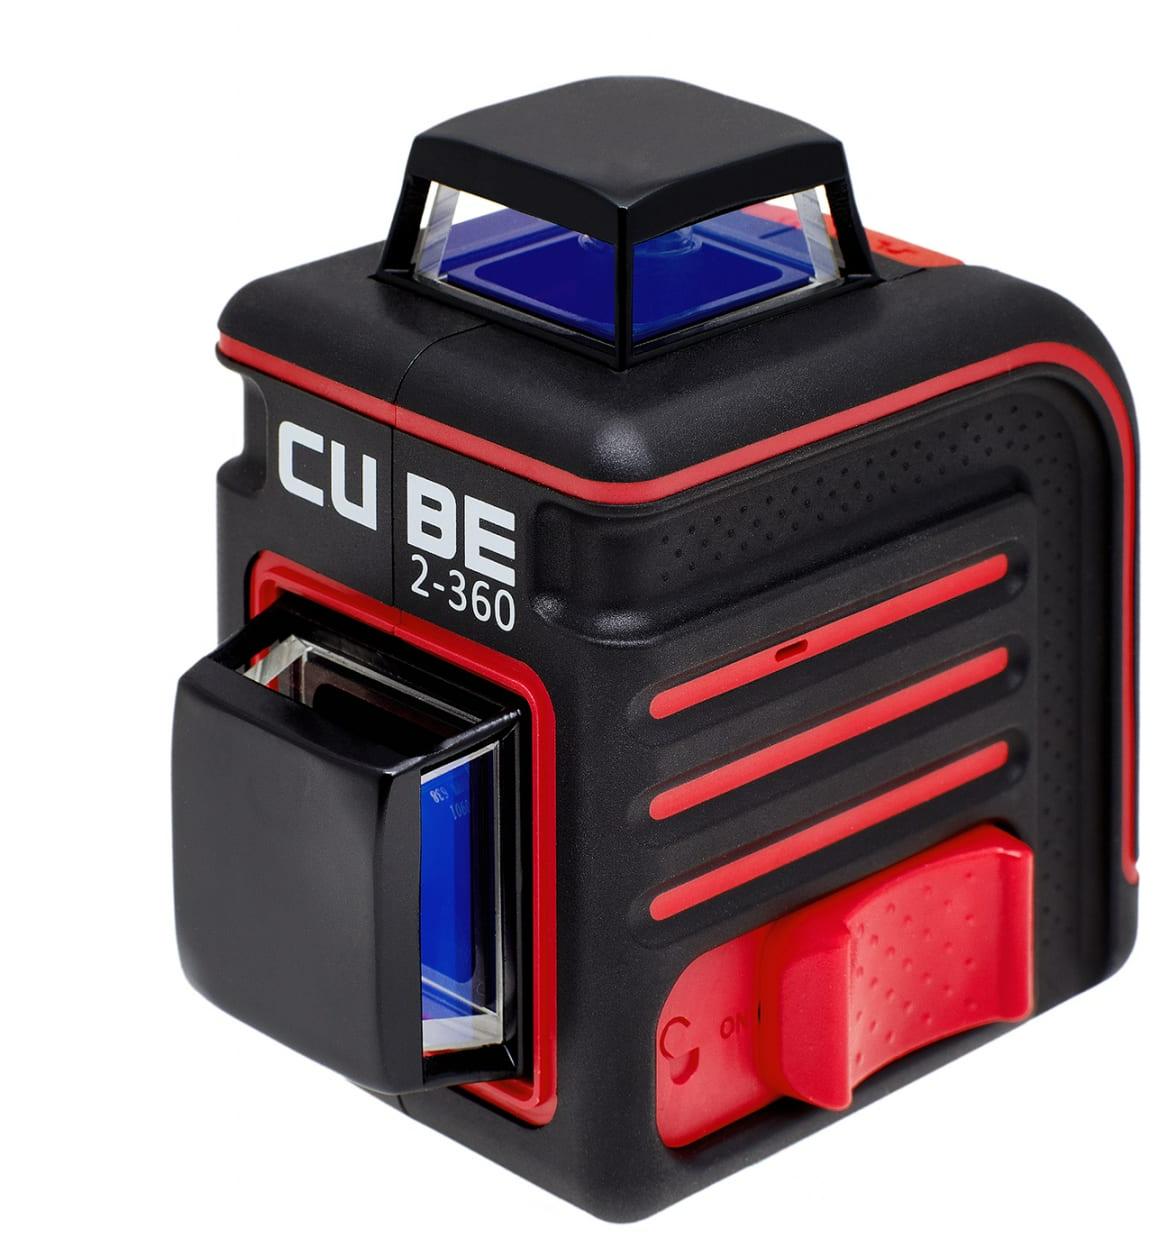 Ada cube ultimate. Ada Cube 3-360 Ultimate Edition. Лазерный нивелир ada. Лазерный уровень Cube 360. Кейс для ada Cube.